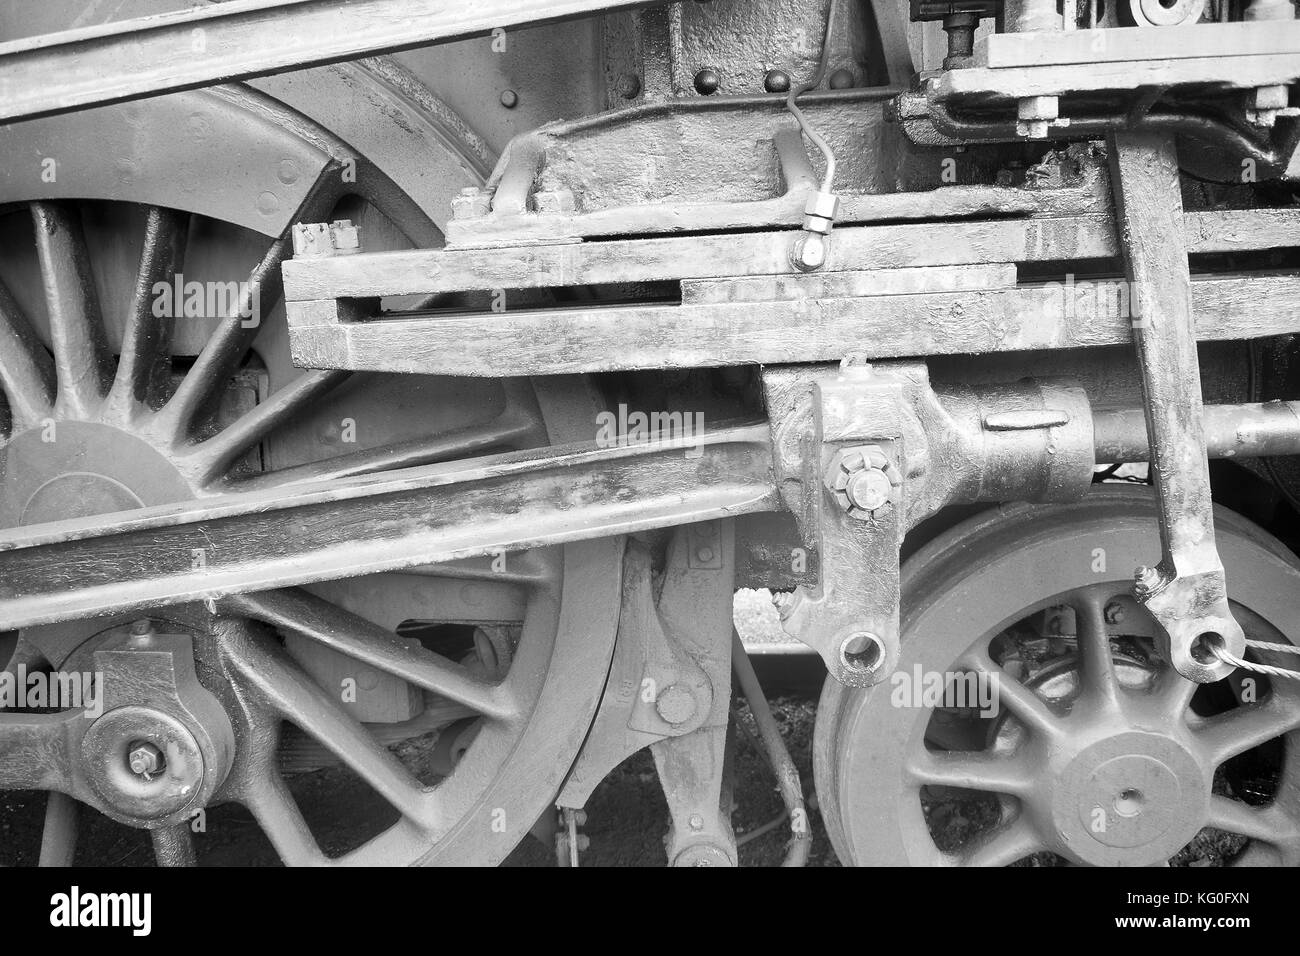 Vintage las ruedas de los trenes en una vieja locomotora esperando resoration Foto de stock